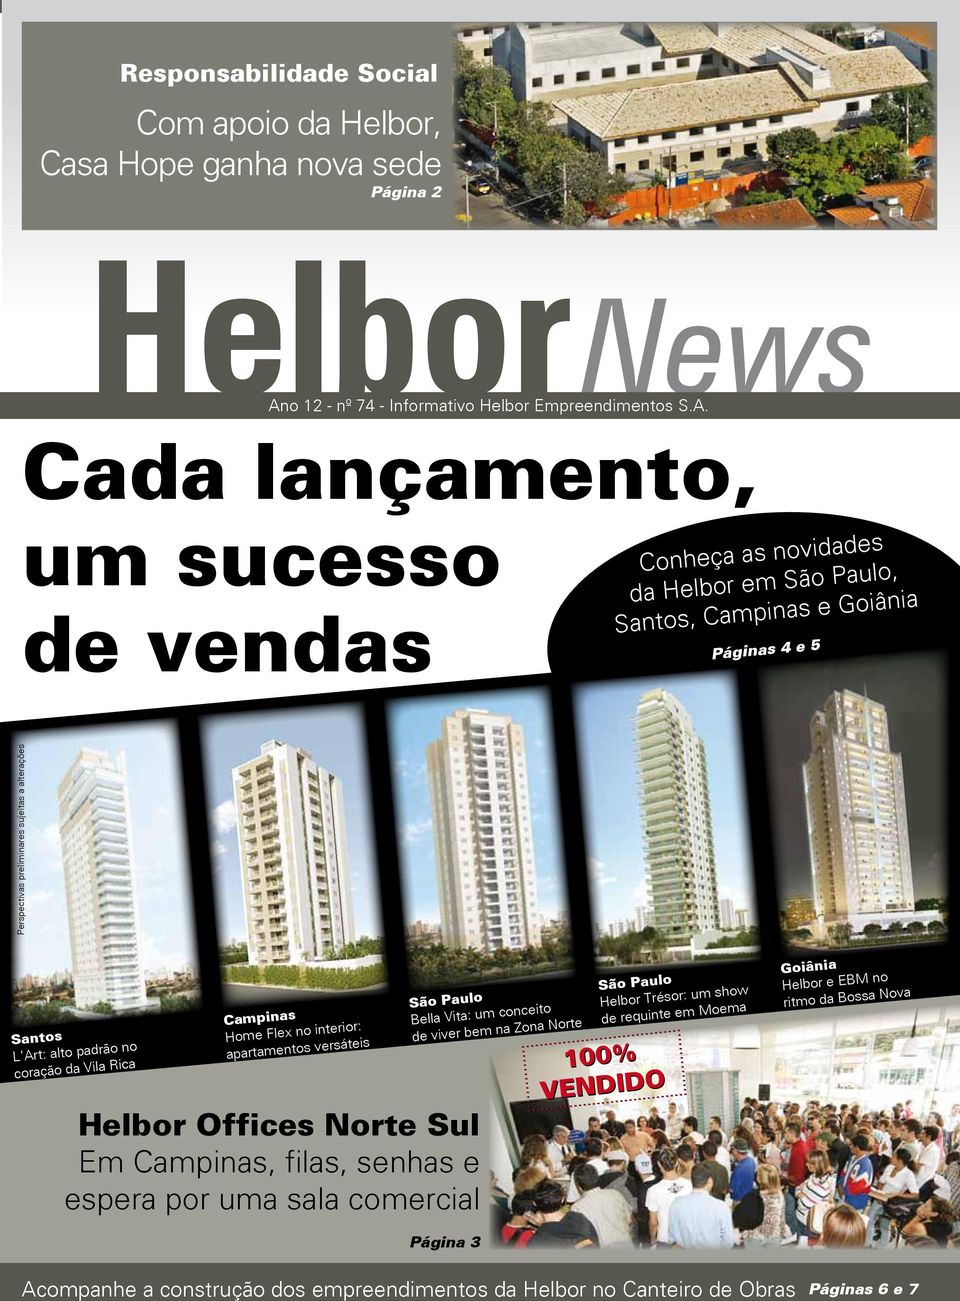 Cada lançamento, um sucesso de vendas Conheça as novidades da Helbor em São Paulo, Santos, Campinas e Goiânia Páginas 4 e 5 Perspectivas preliminares sujeitas a alterações Santos L Art: alto